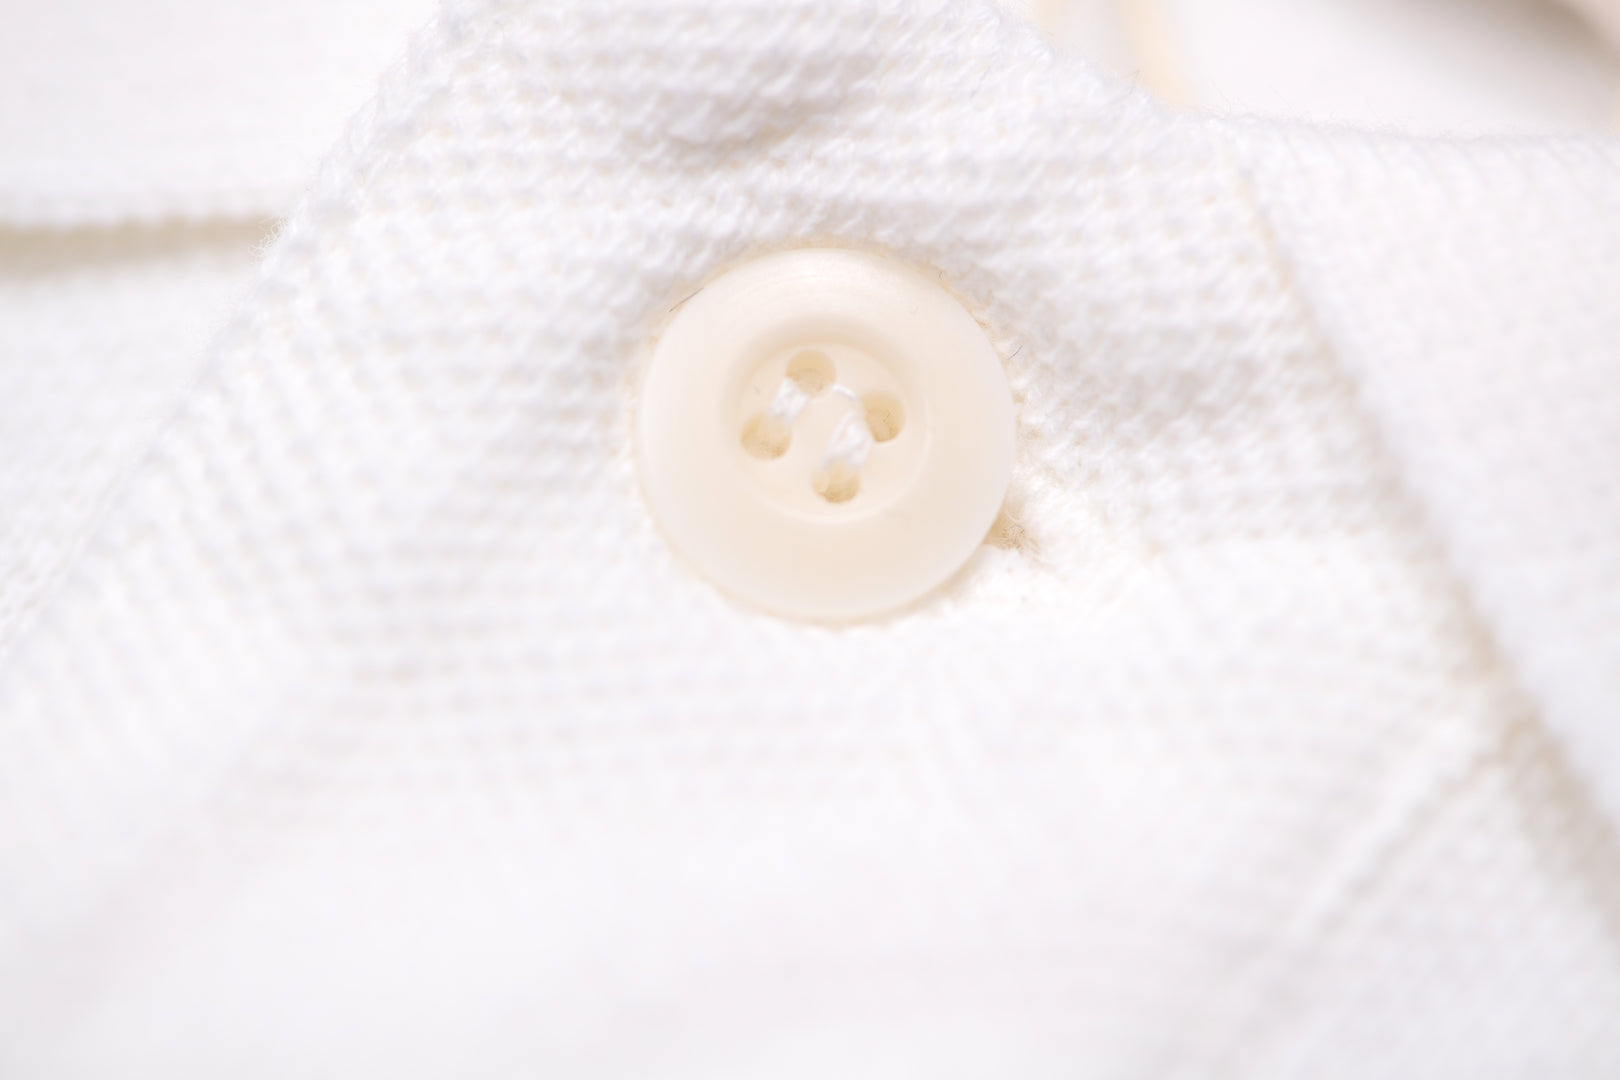 UES 'Kanoko' Polo Shirt (White)